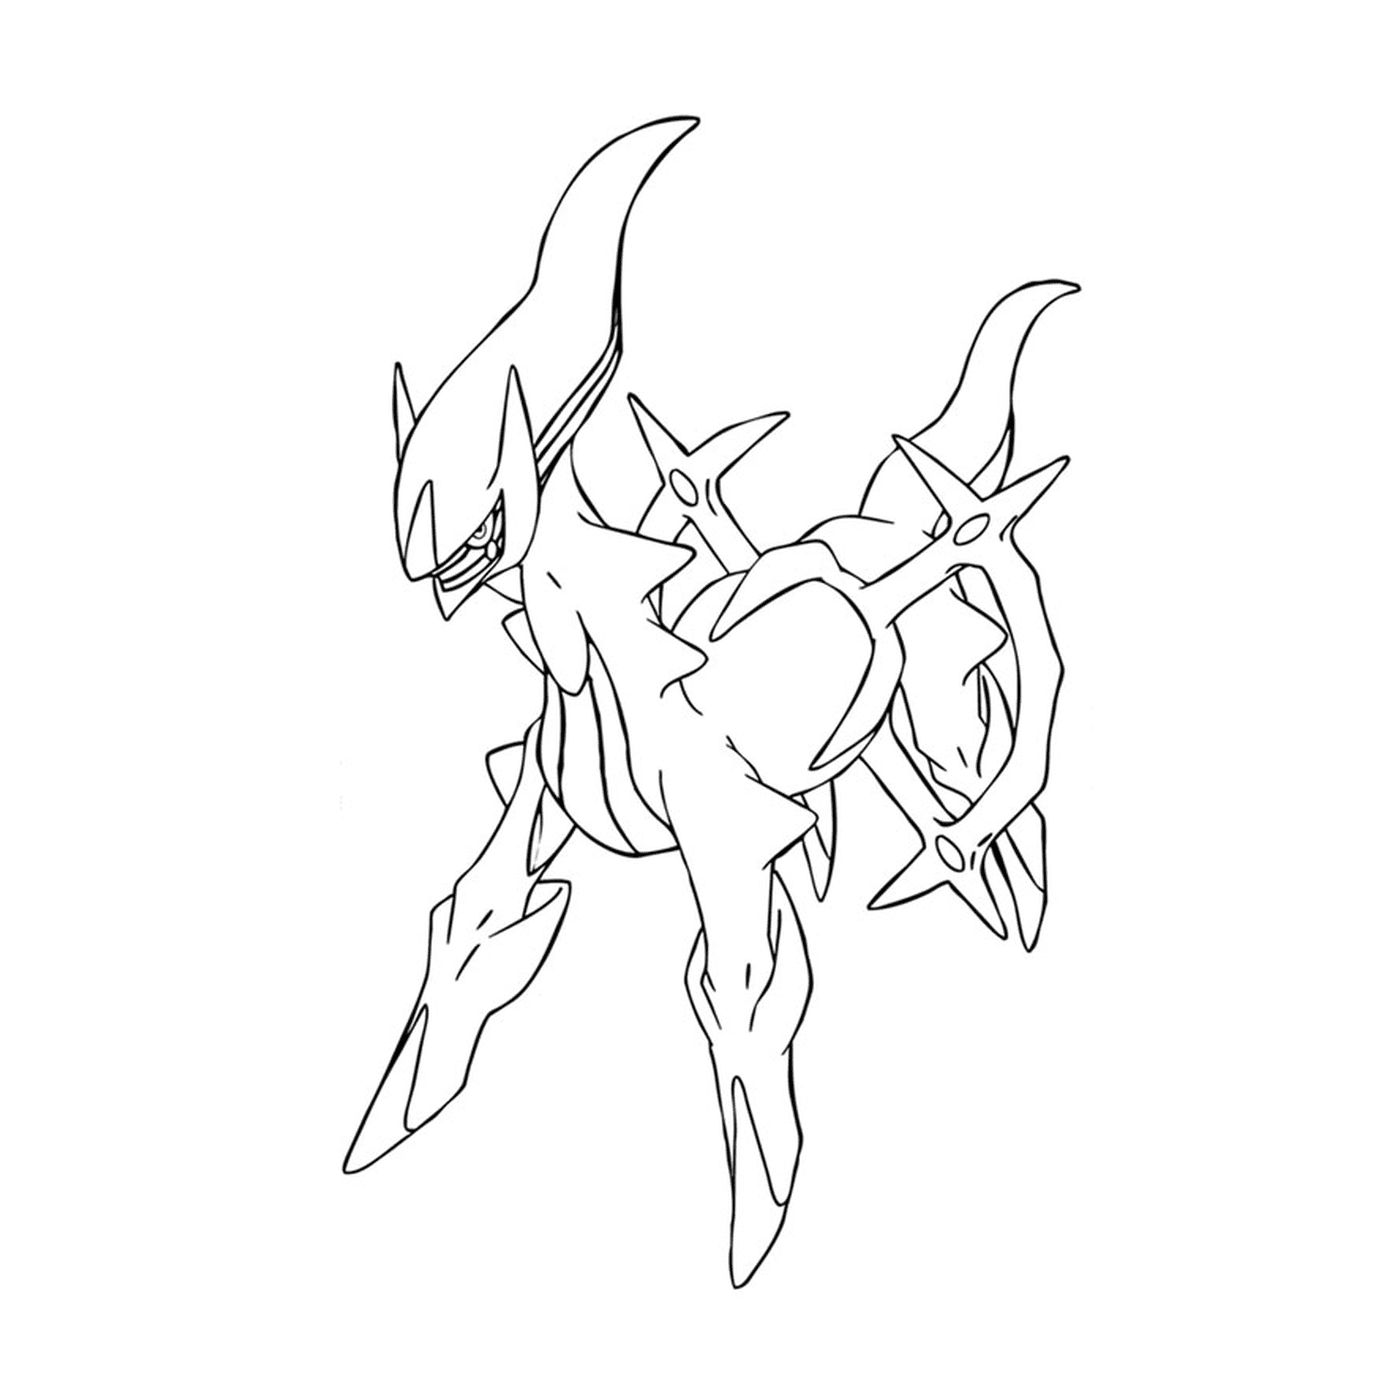  Arceus, Pokémon dibujado en negro 